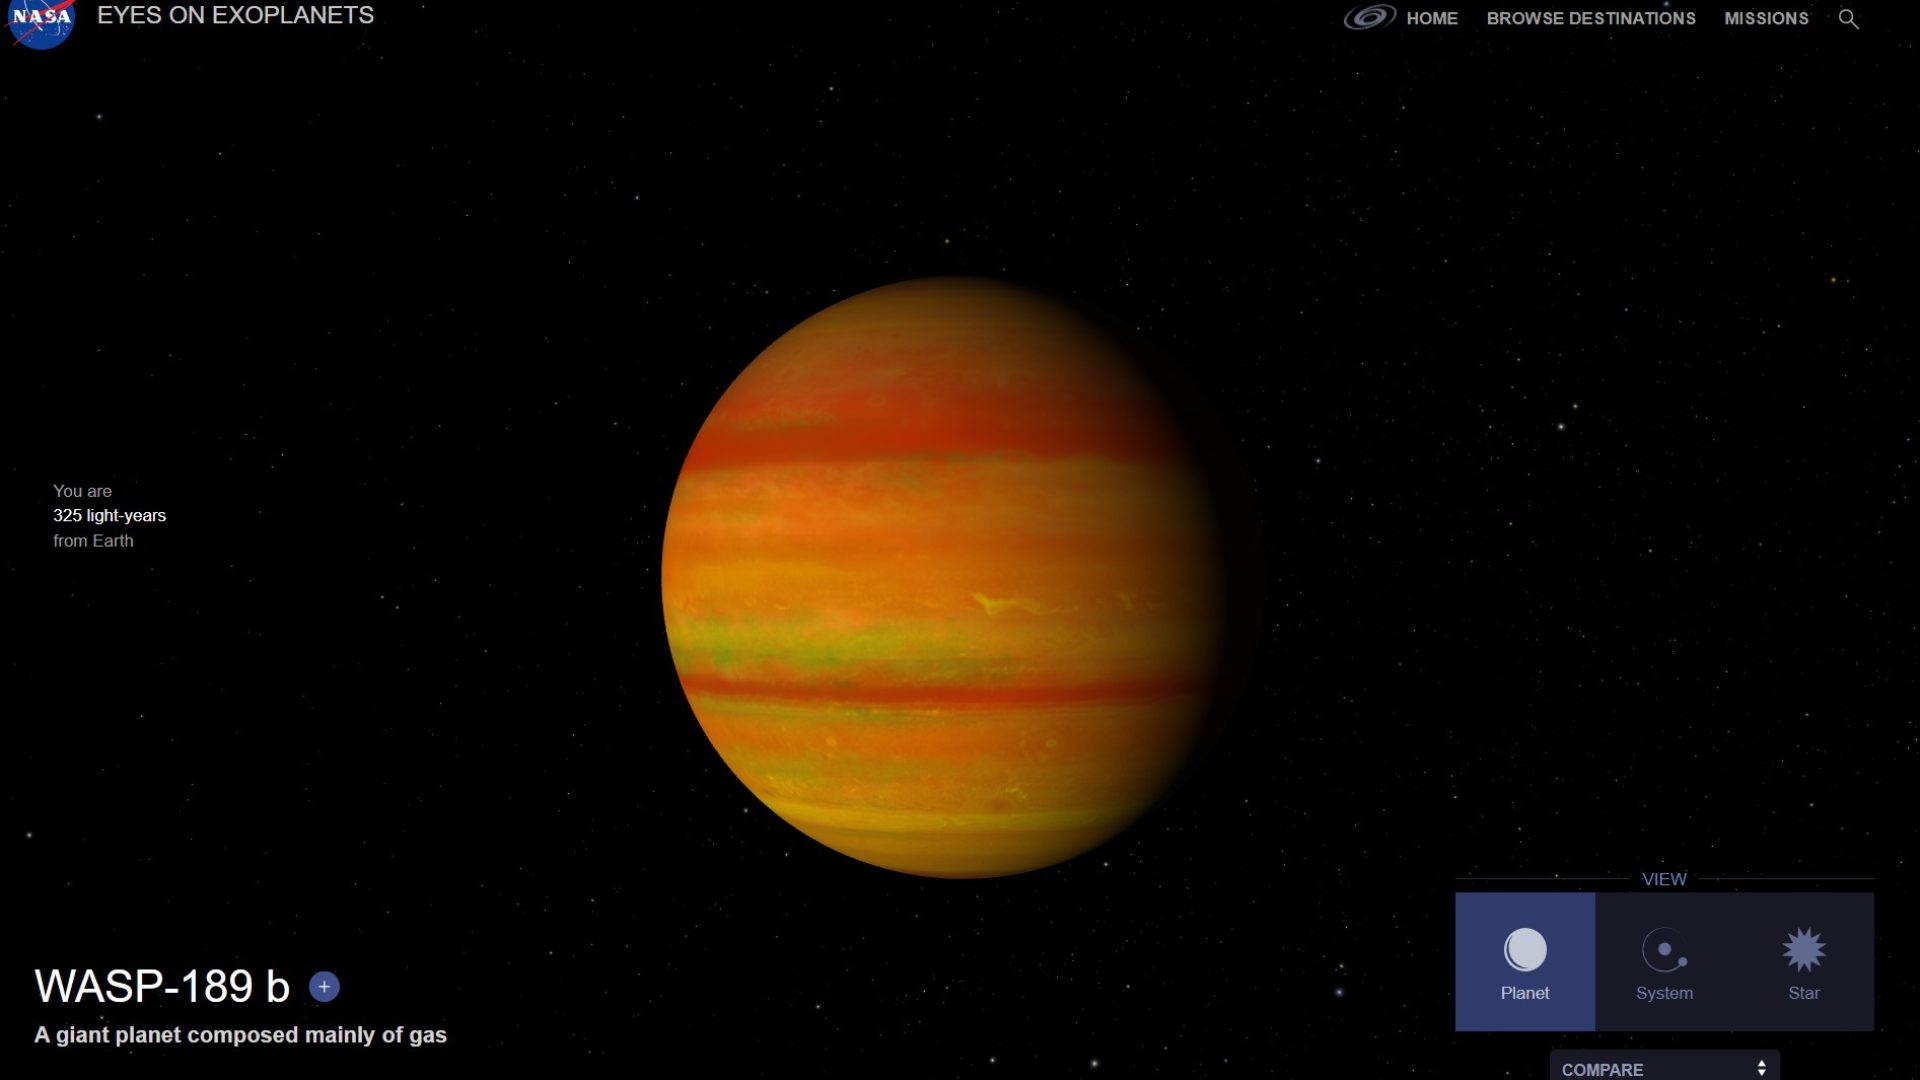 Exoplanet_WASP-189b. Credit: NASA